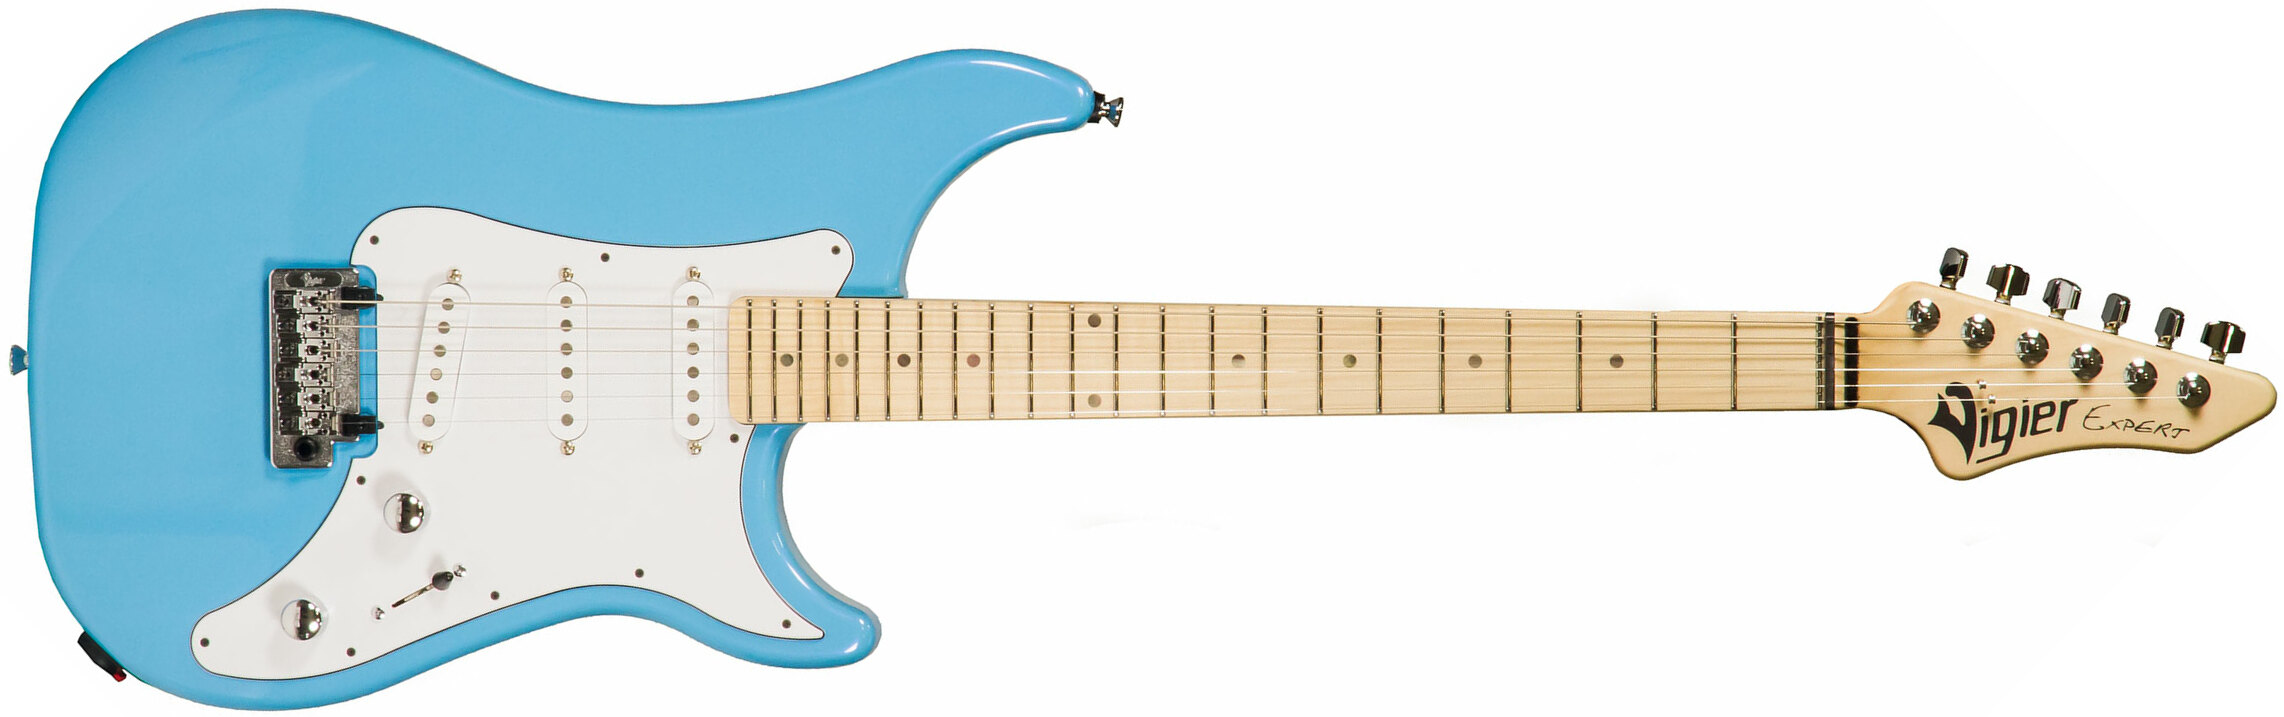 Vigier Expert Classic Rock Sss Trem Mn - Normandie Blue - Guitarra eléctrica con forma de str. - Main picture